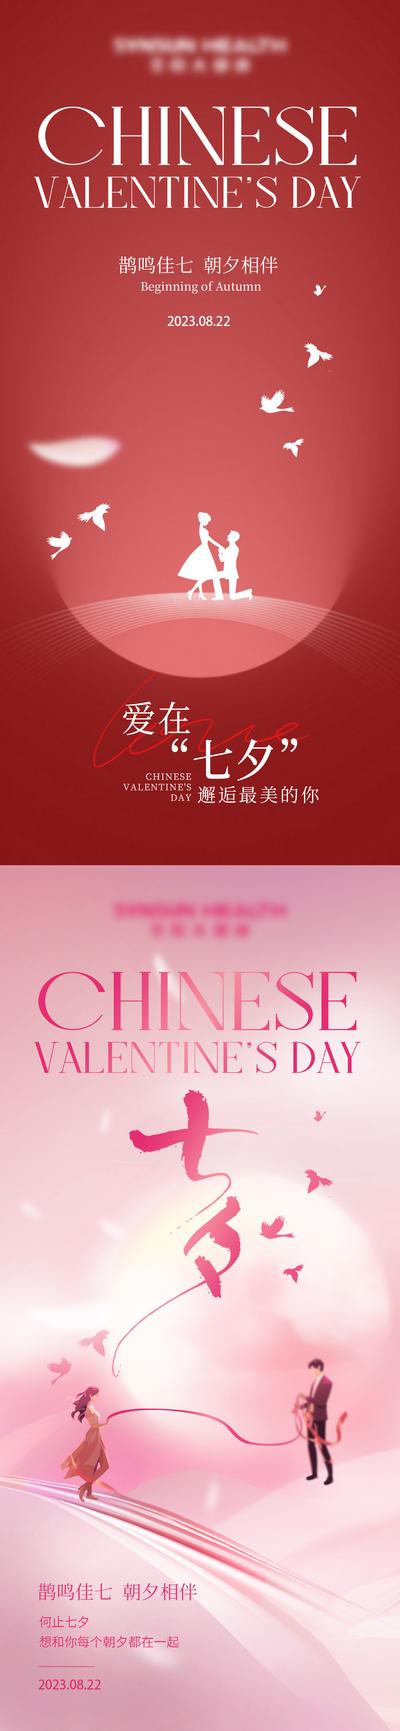 南门网 海报 中国传统节日 七夕 情人节 情侣 插画 剪影